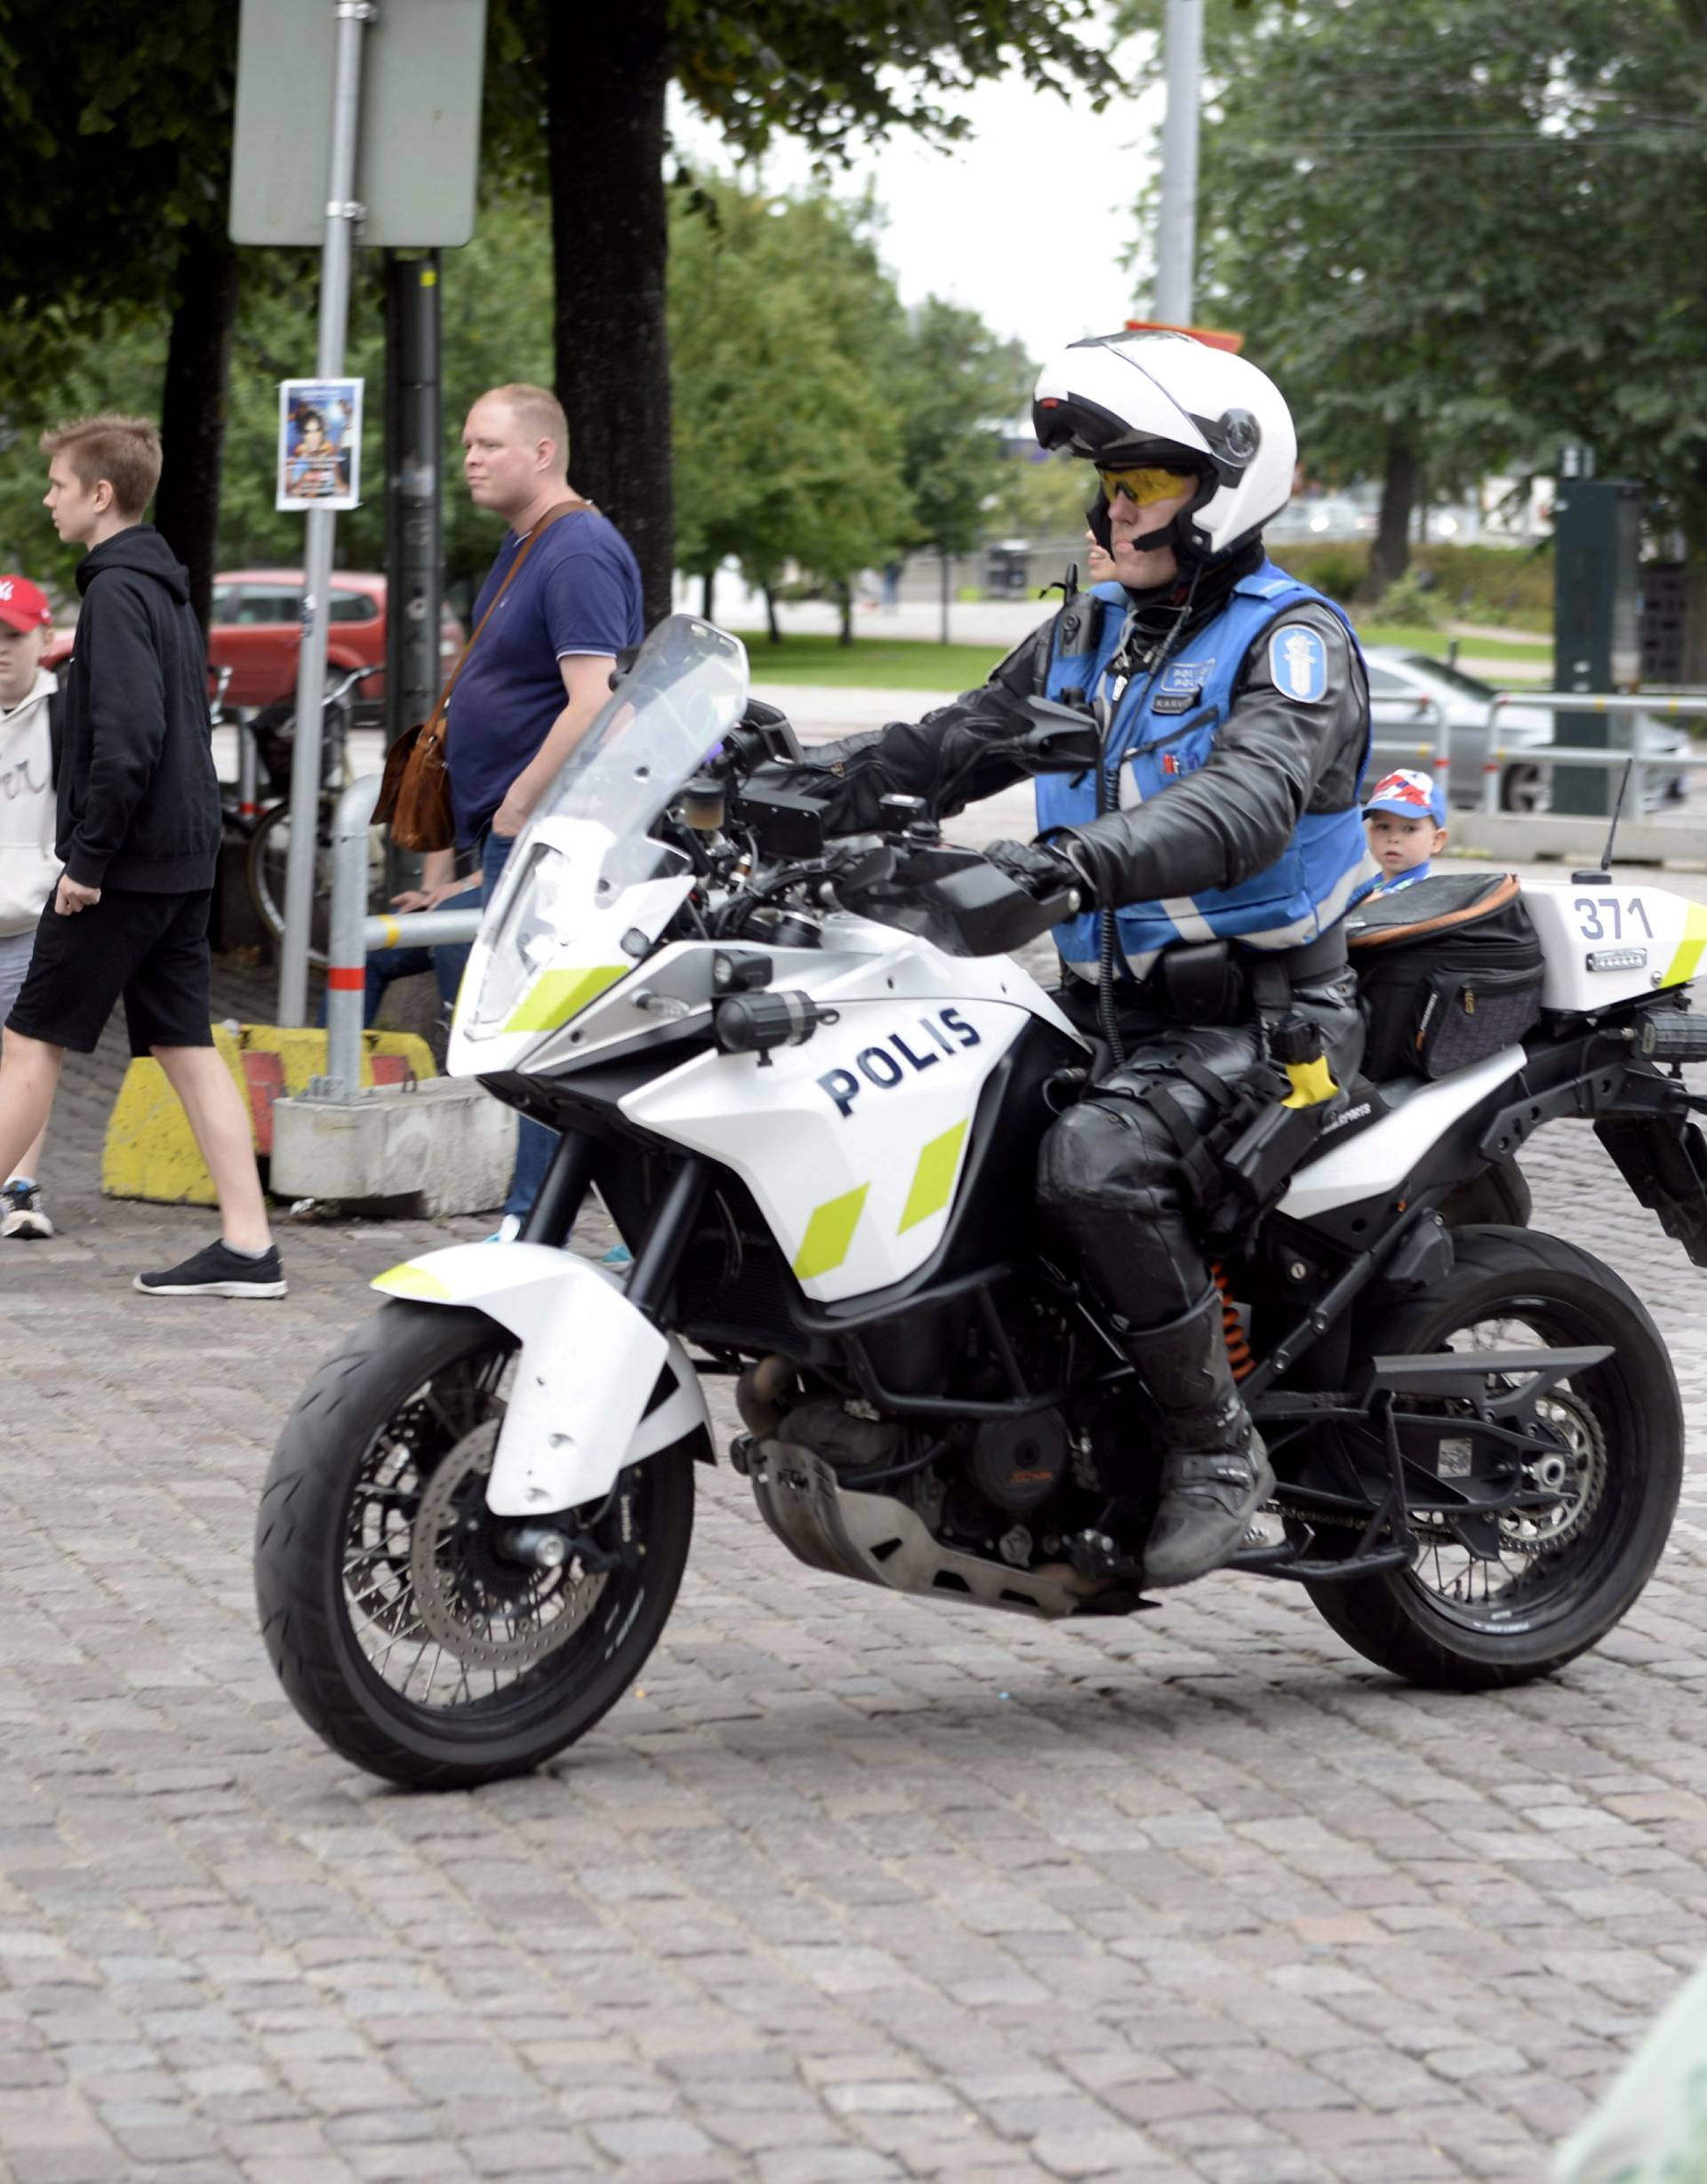 Finnish police patrols on motorbike after stabbings in Turku, in Central Helsinki